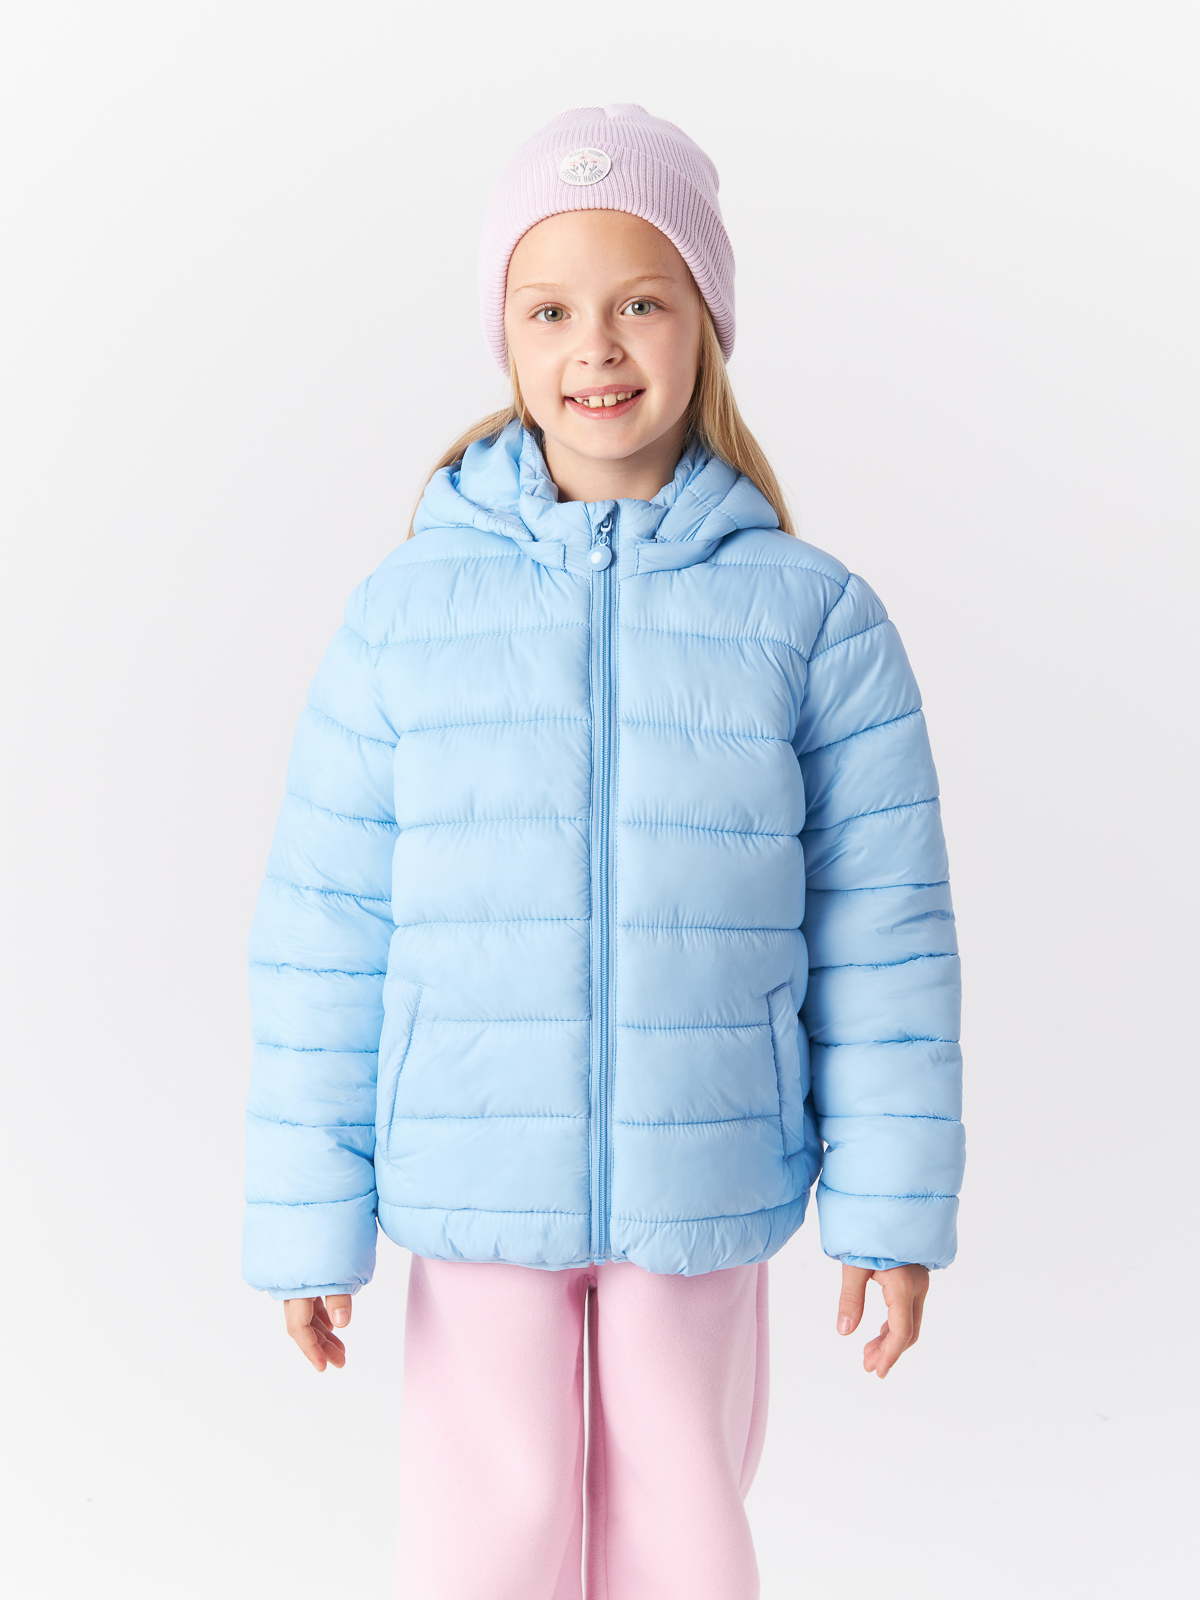 Куртка Mcstyles для девочки, размер 116, SMM14, голубая